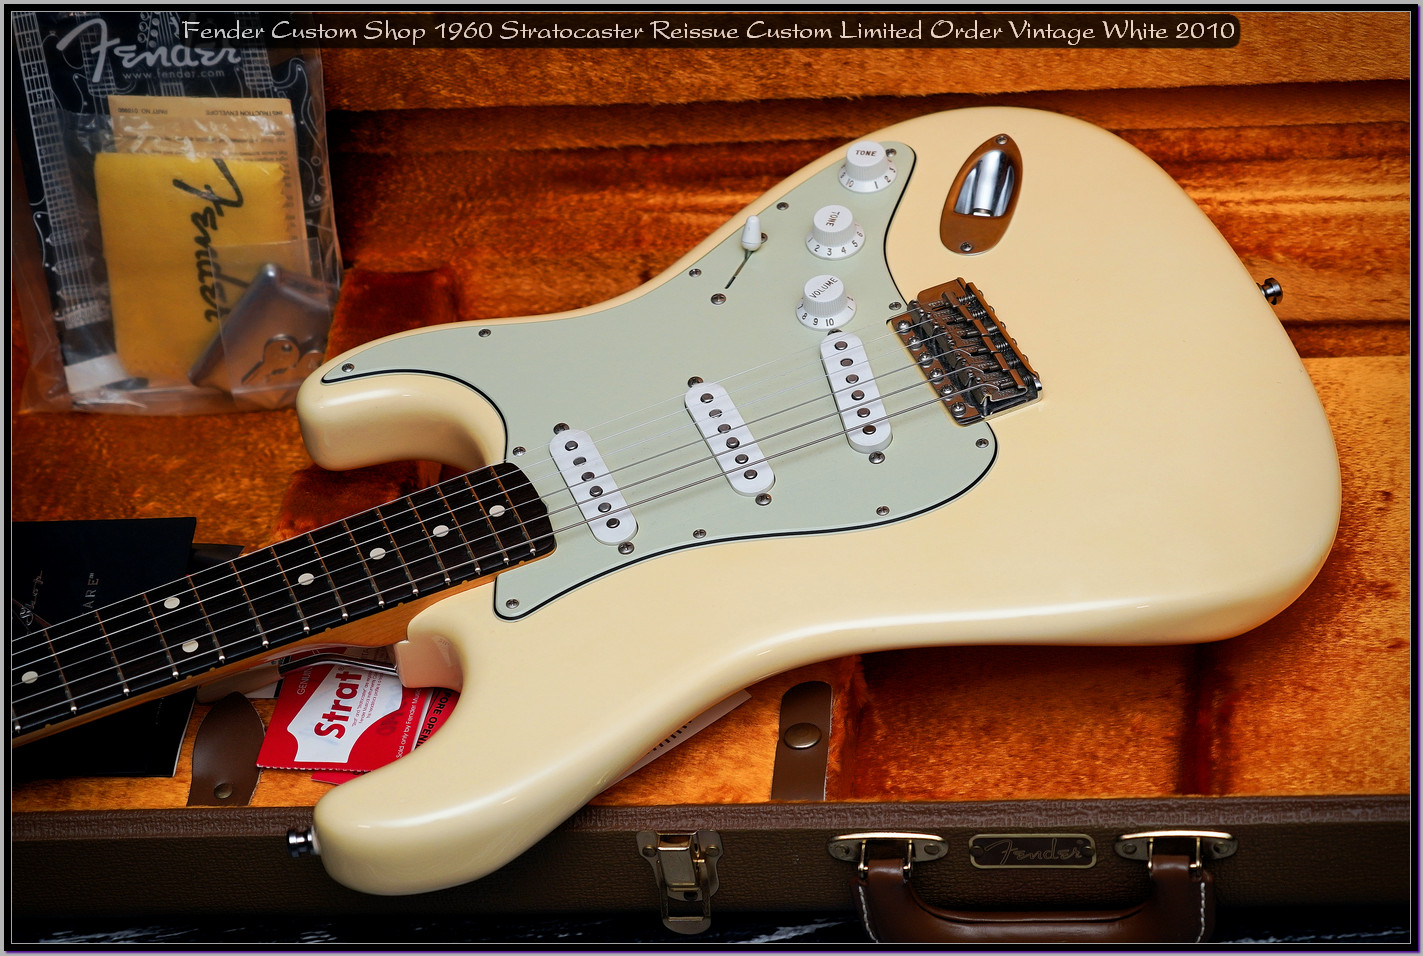 Fender Custom Shop 1960 Stratocaster Reissue Custom Limited Order Vintage White 2010 23_x1400.jpg